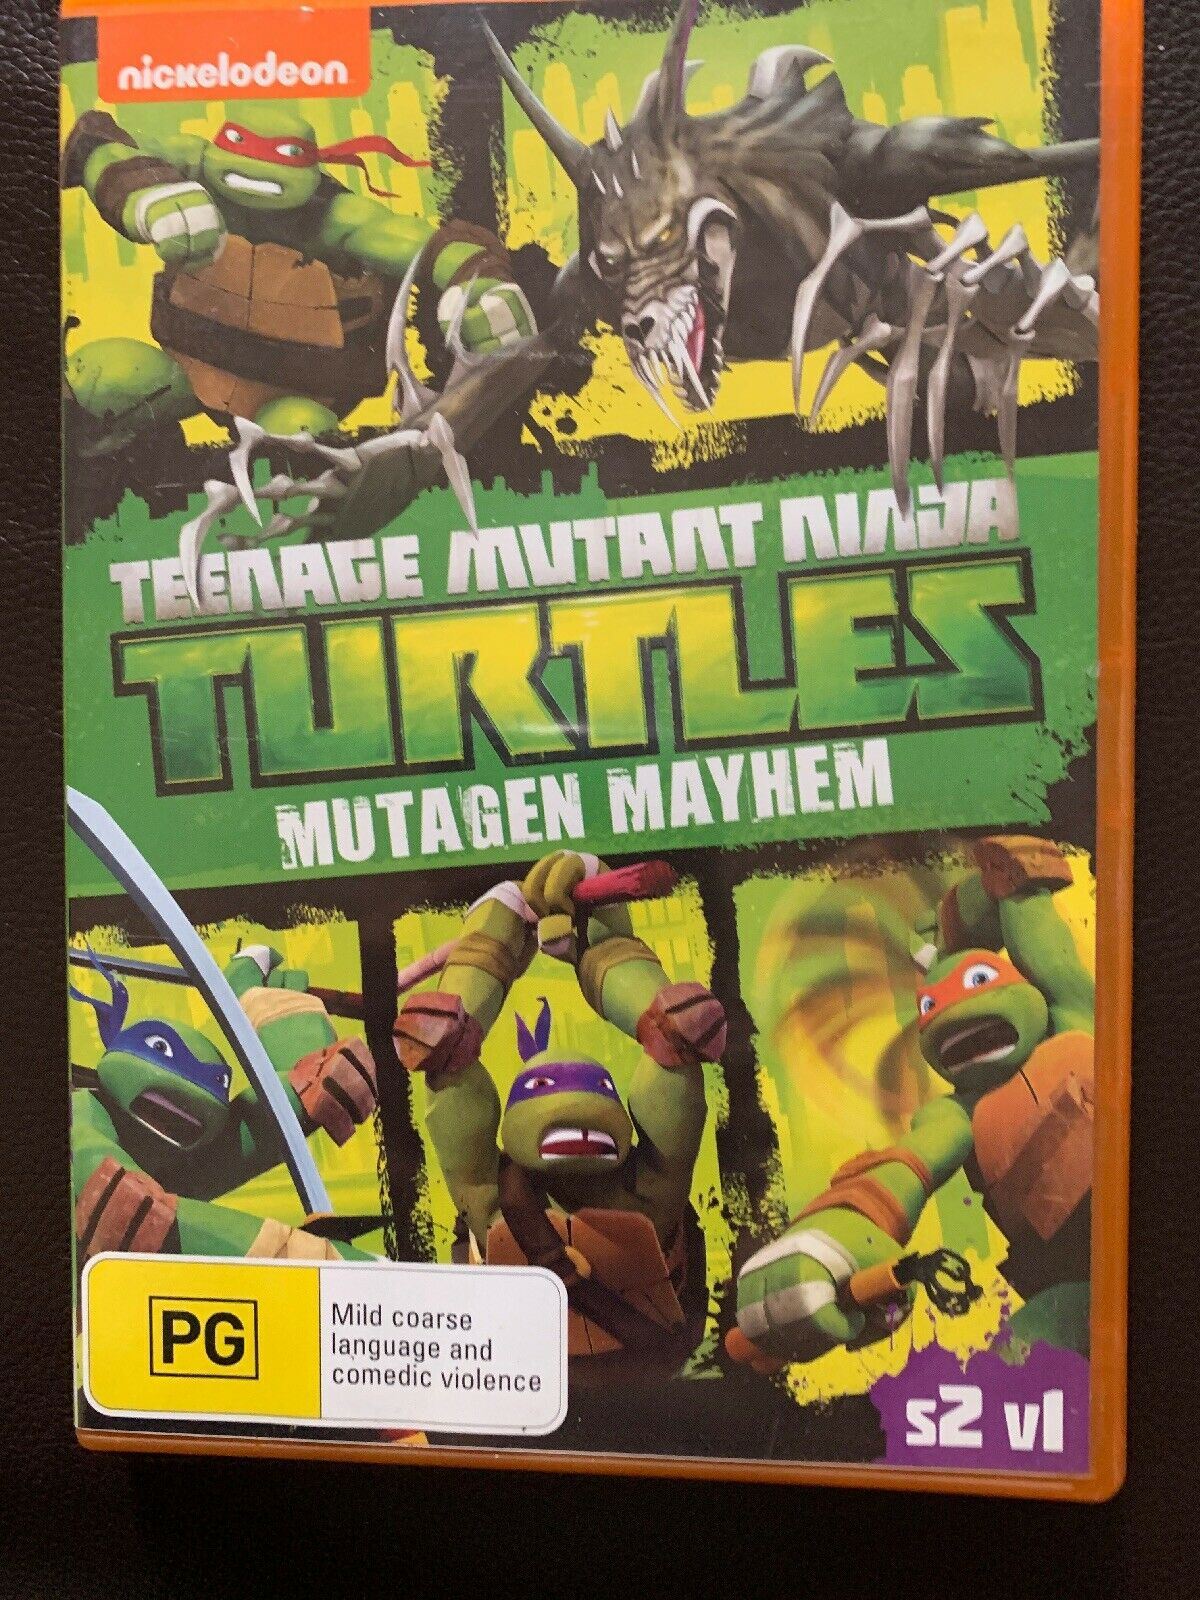 Teenage Mutant Ninja Turtles Mutagen Mayhem Season 2 Volume 1 DVD Region 4